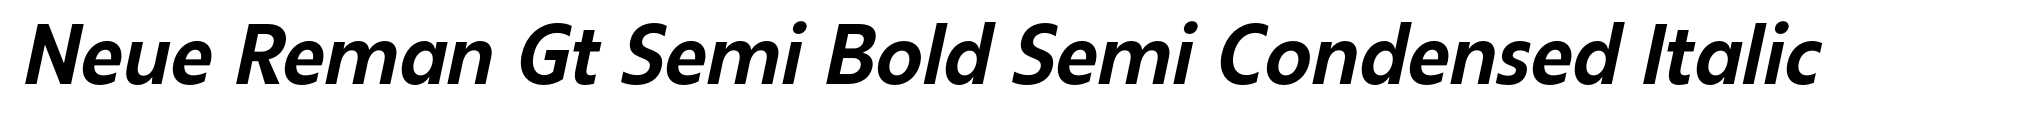 Neue Reman Gt Semi Bold Semi Condensed Italic image